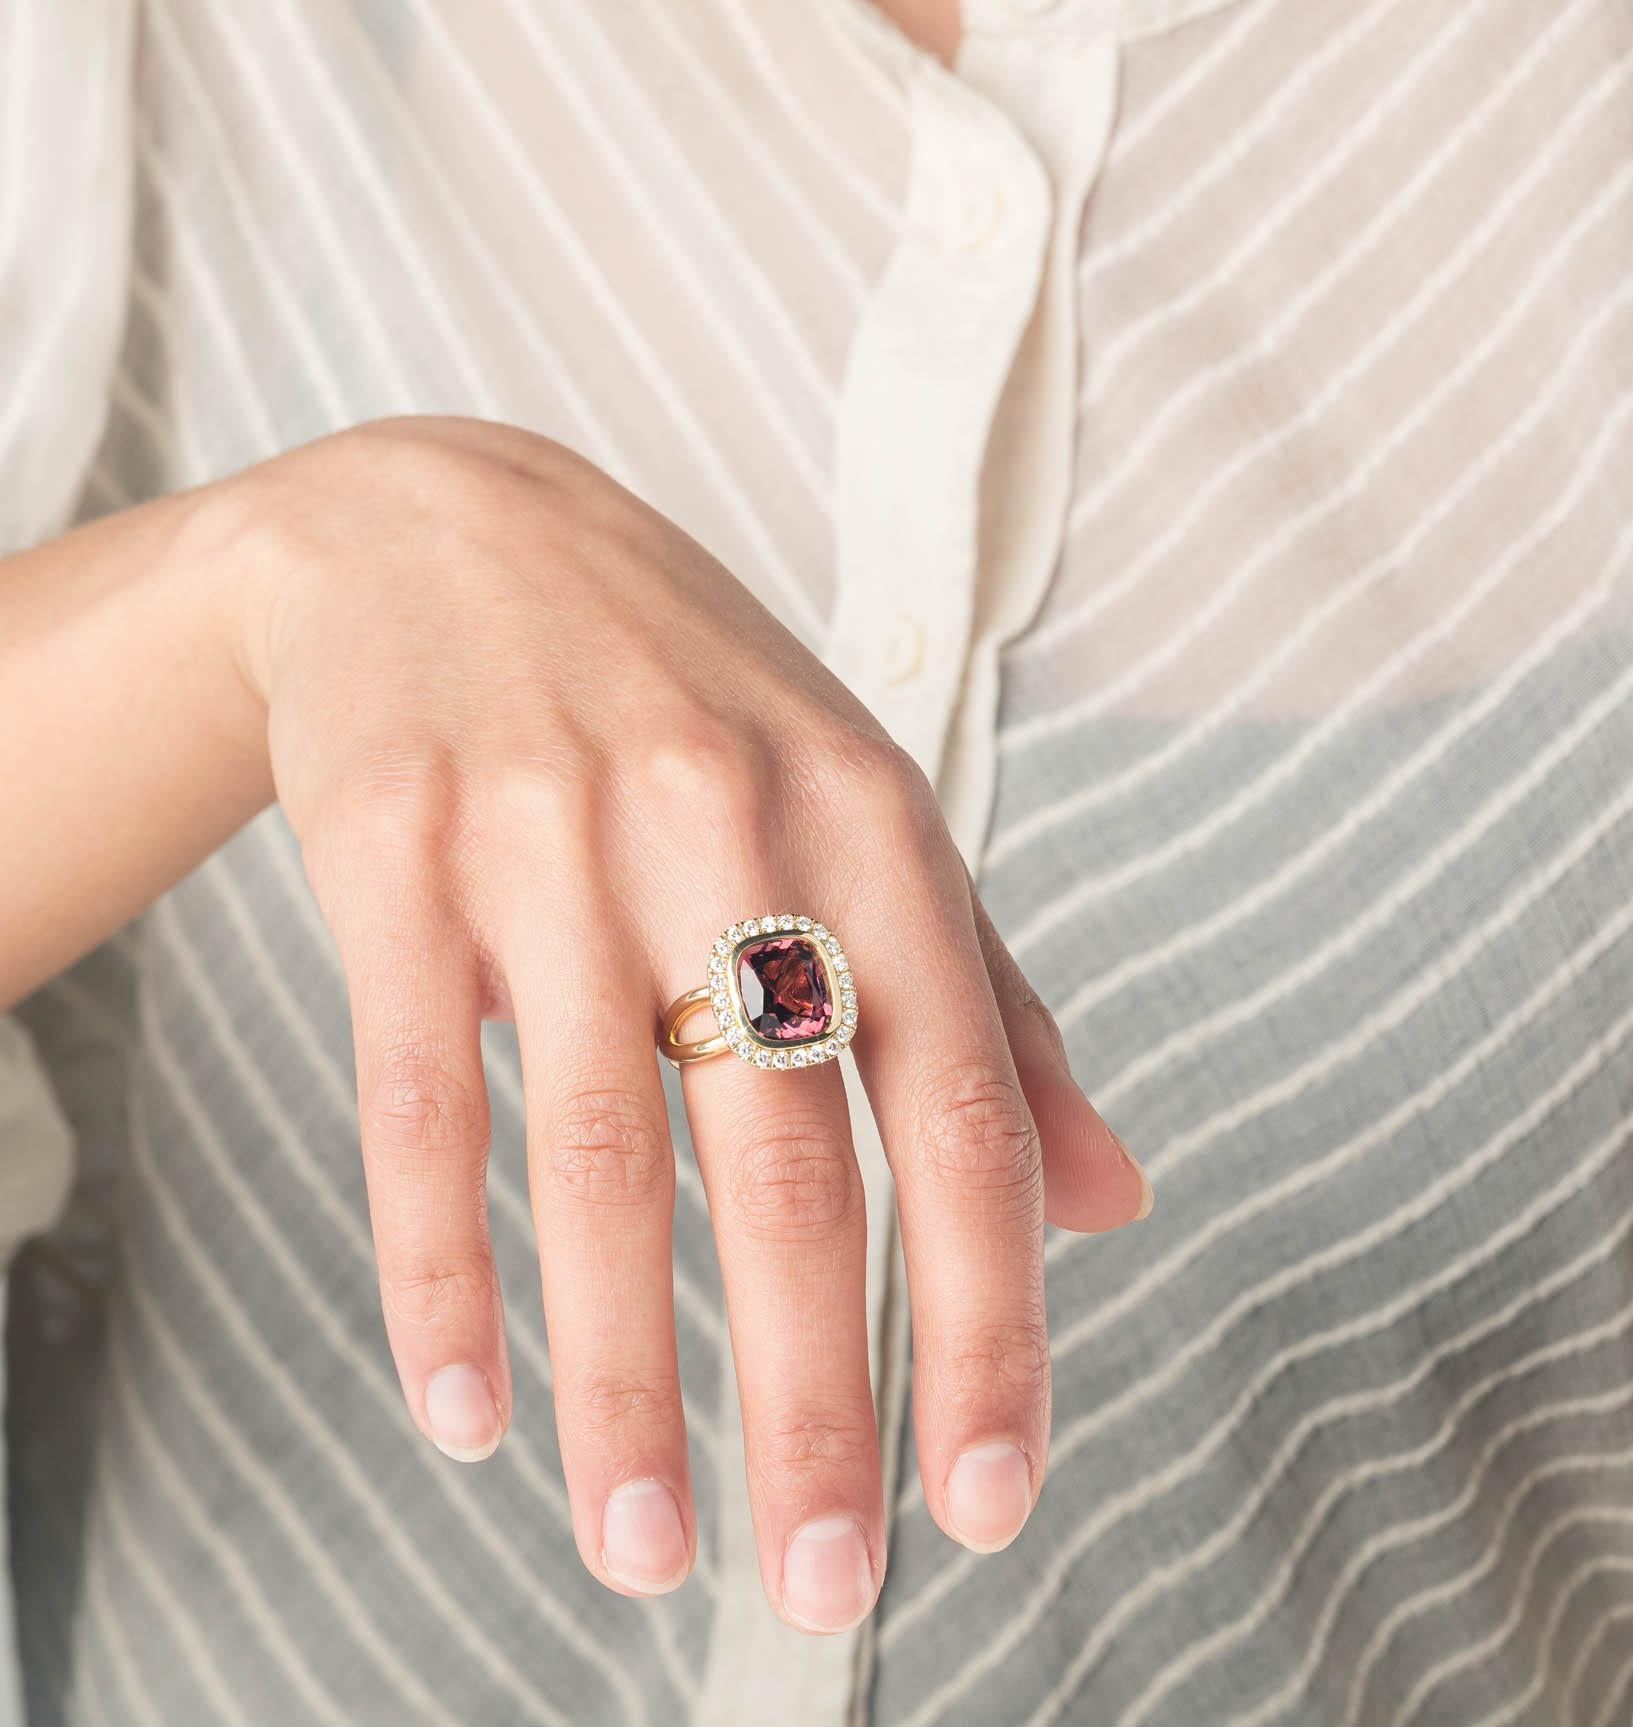 Verspielter rosa Ring mit tiefrosa Turmalin und 24 Diamanten  Cober-Schmuck

Entdecken Sie die exquisite Schönheit von Cober Jewellery!
Willkommen bei Cober Jewellery, wo wir Ihnen die feinsten und exquisitesten Stücke anbieten, die Ihre Sinne